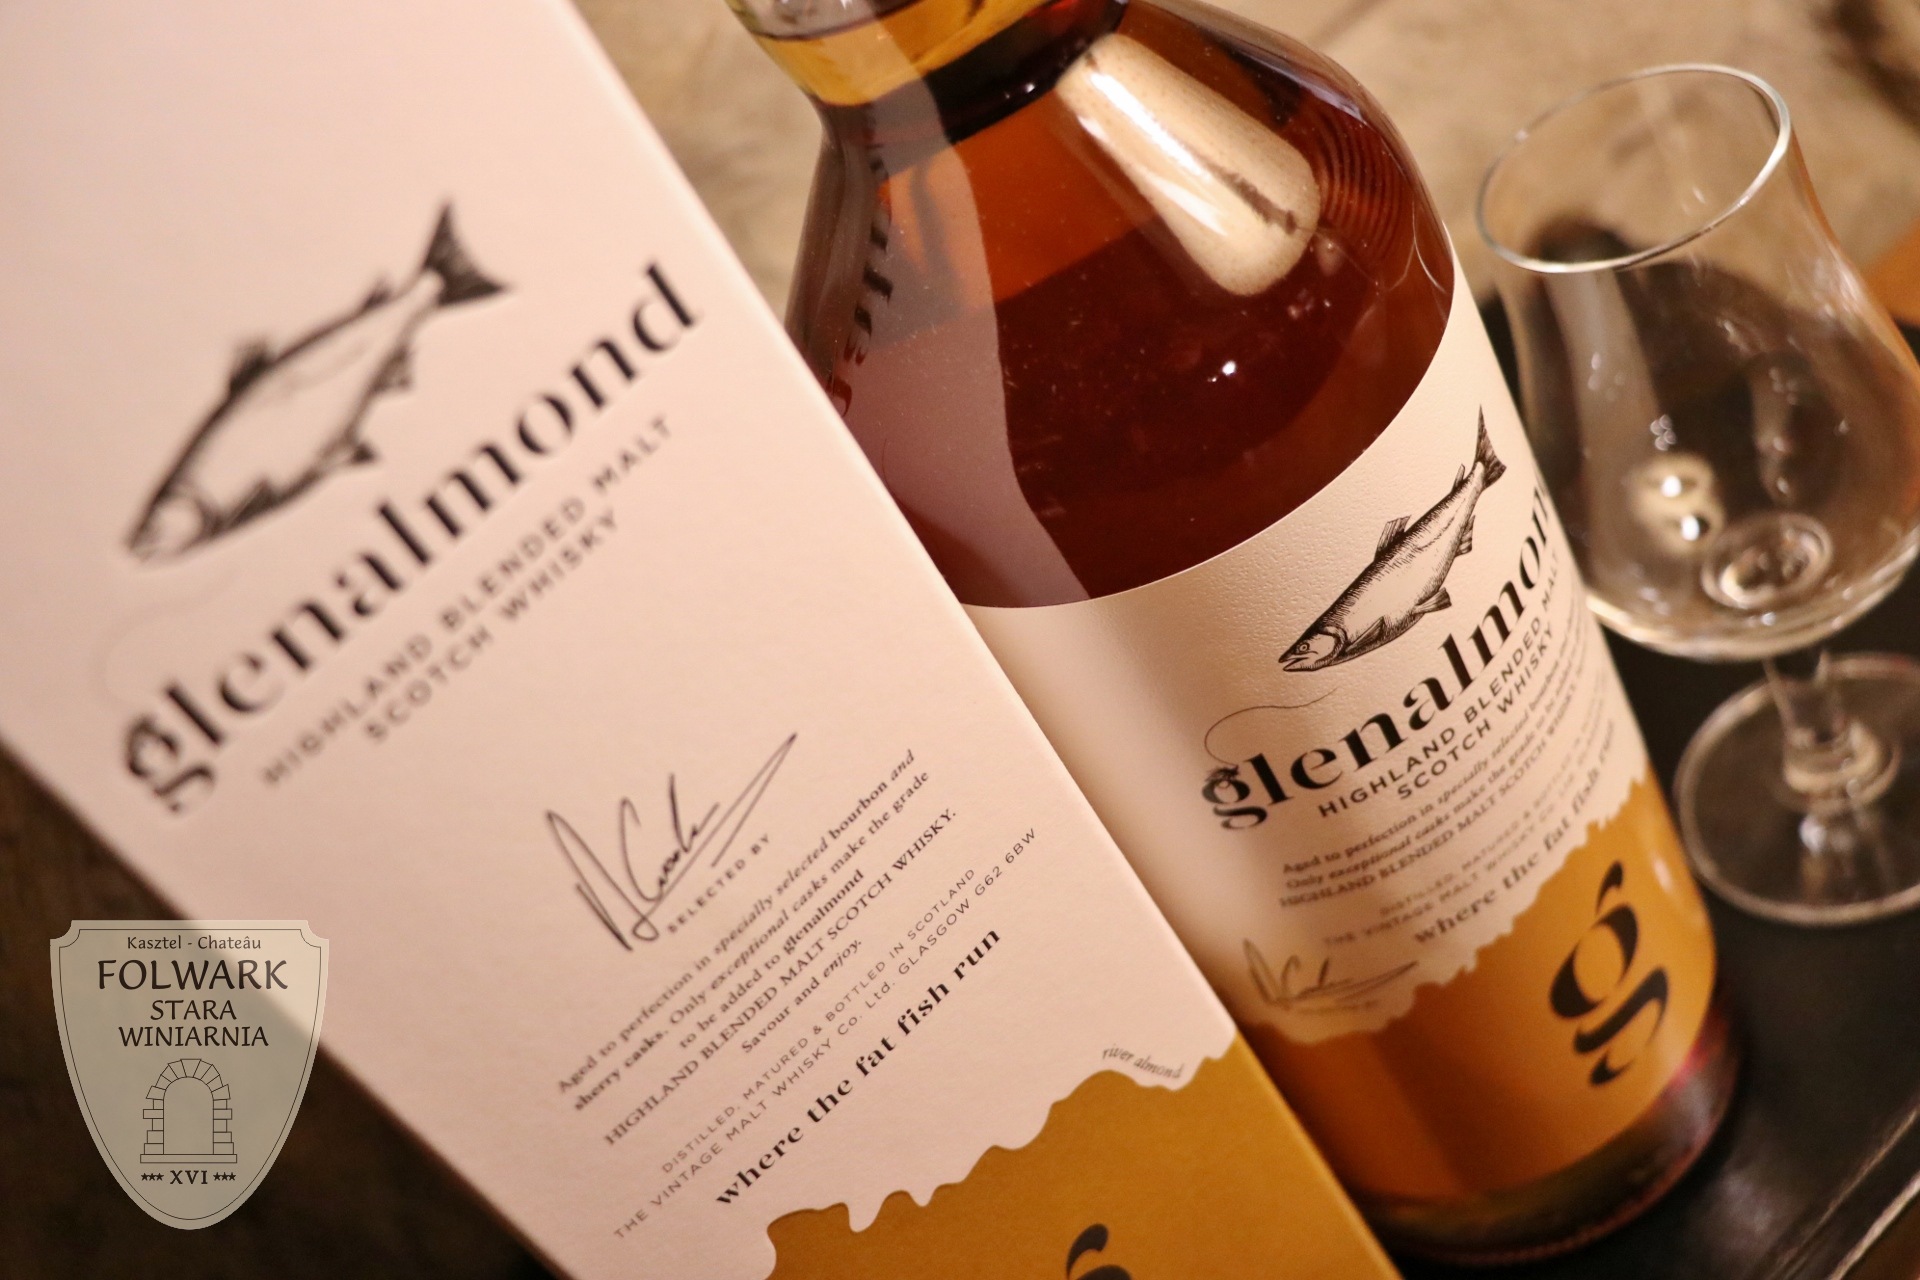 Glenalmond Highland Blended Malt Scotch Whisky